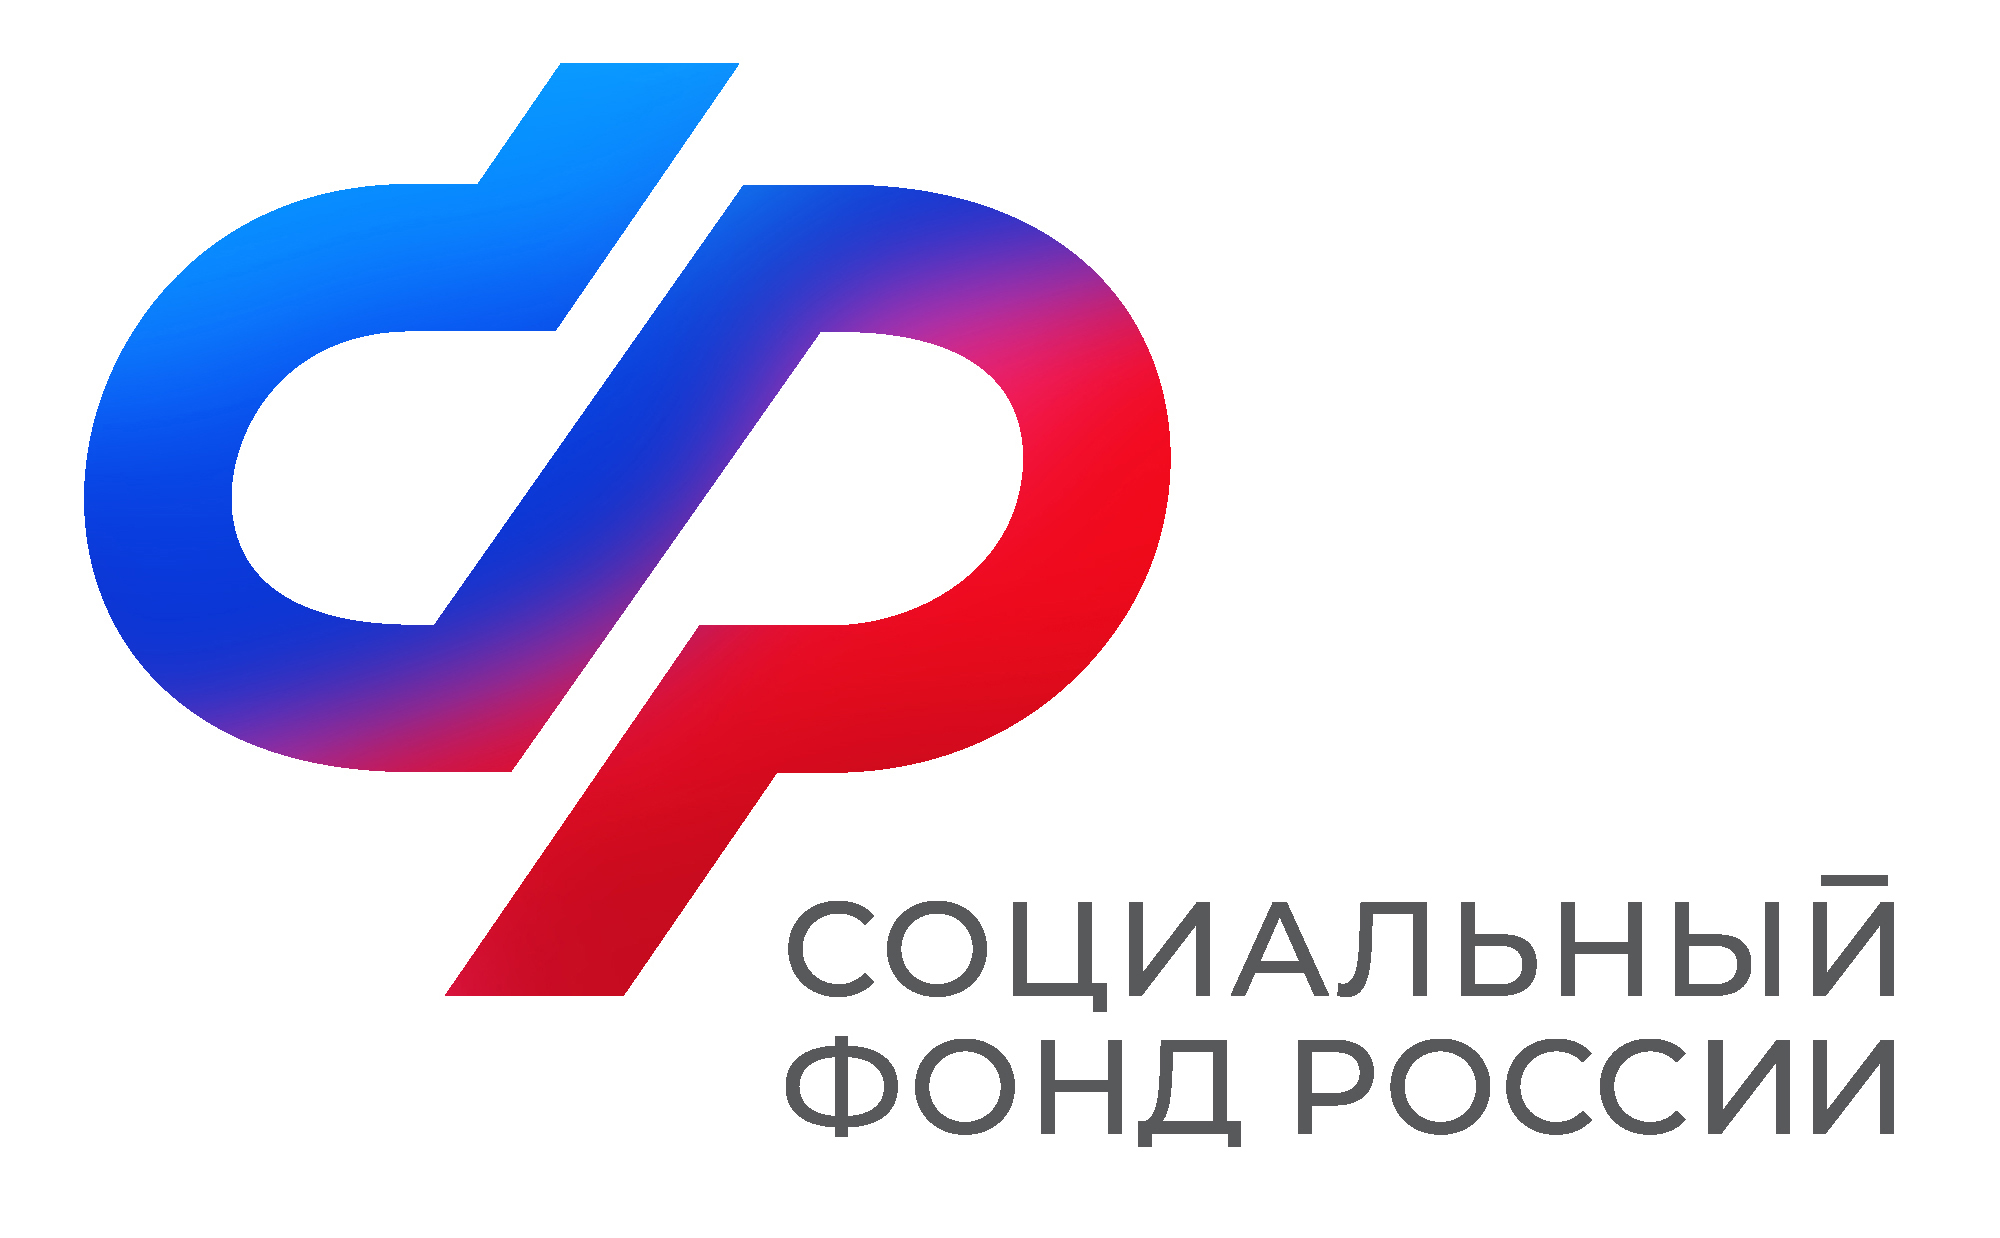 Отделение Социального фонда России по Воронежской области вводит дополнительный день приема граждан.